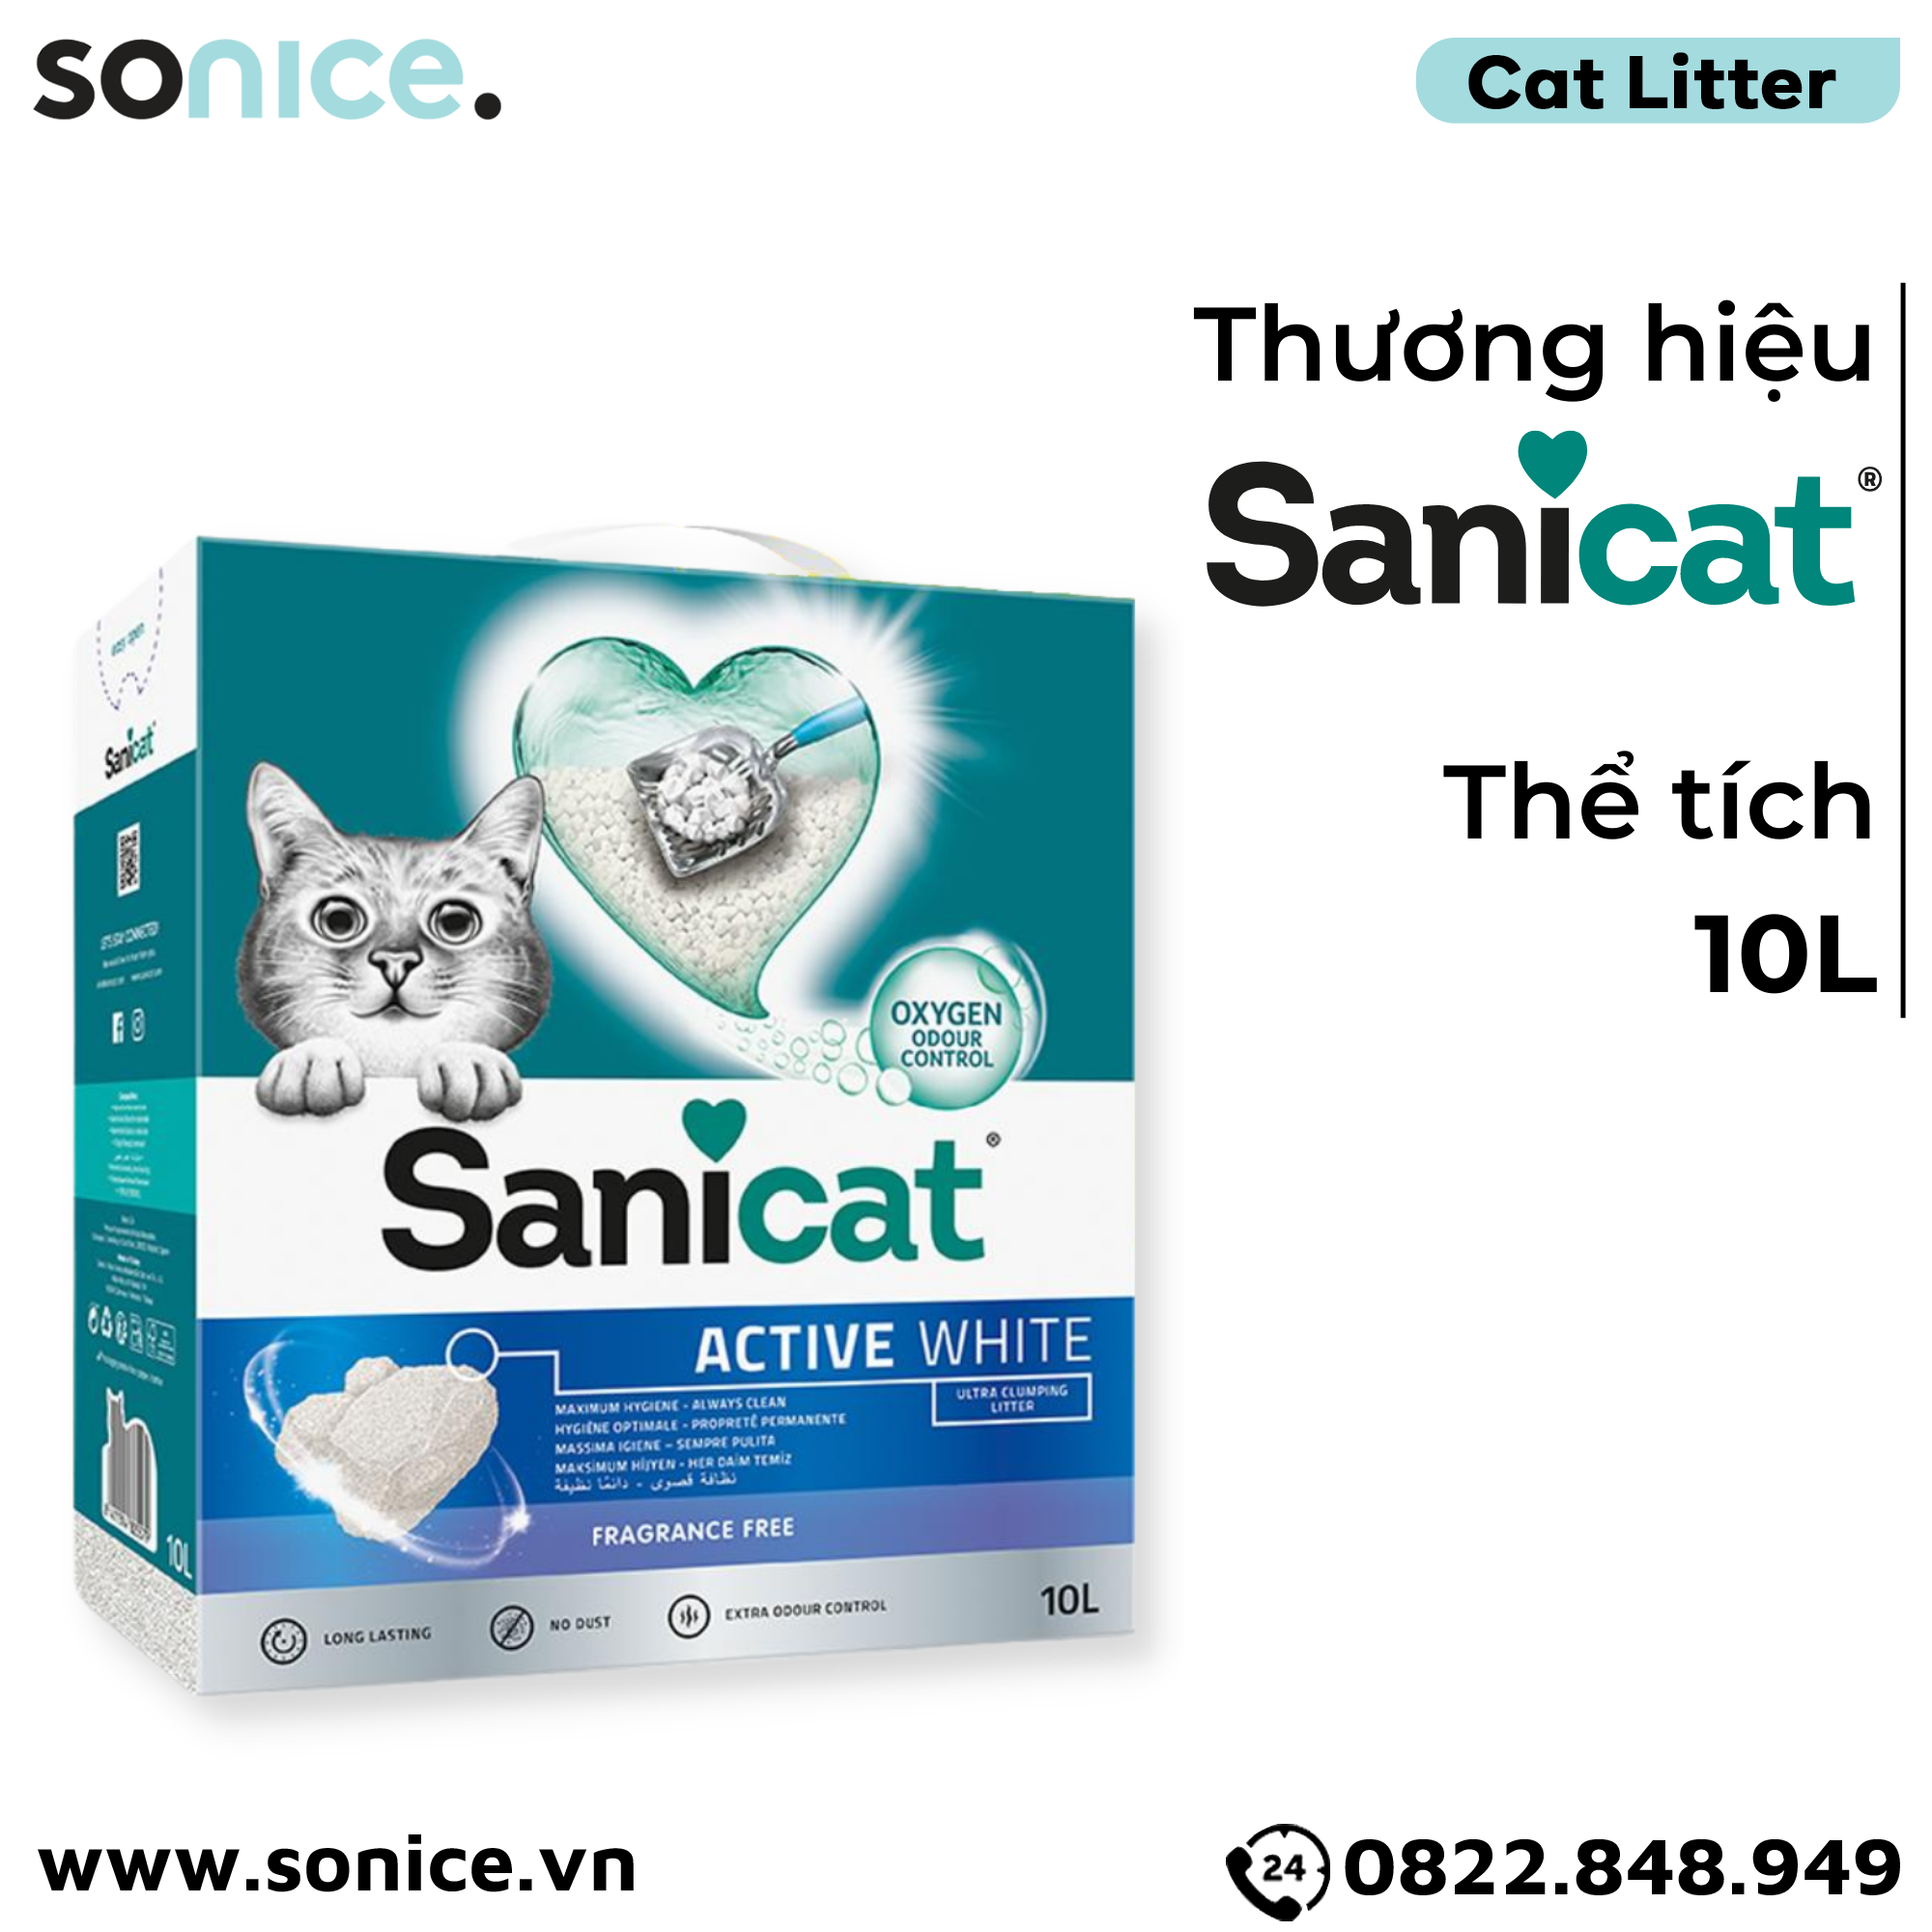  Cát vệ sinh Sanicat Clumping Active White Litter Oxygen Odour Control 10L - Kiểm soát mùi và diệt khuẩn SONICE. 